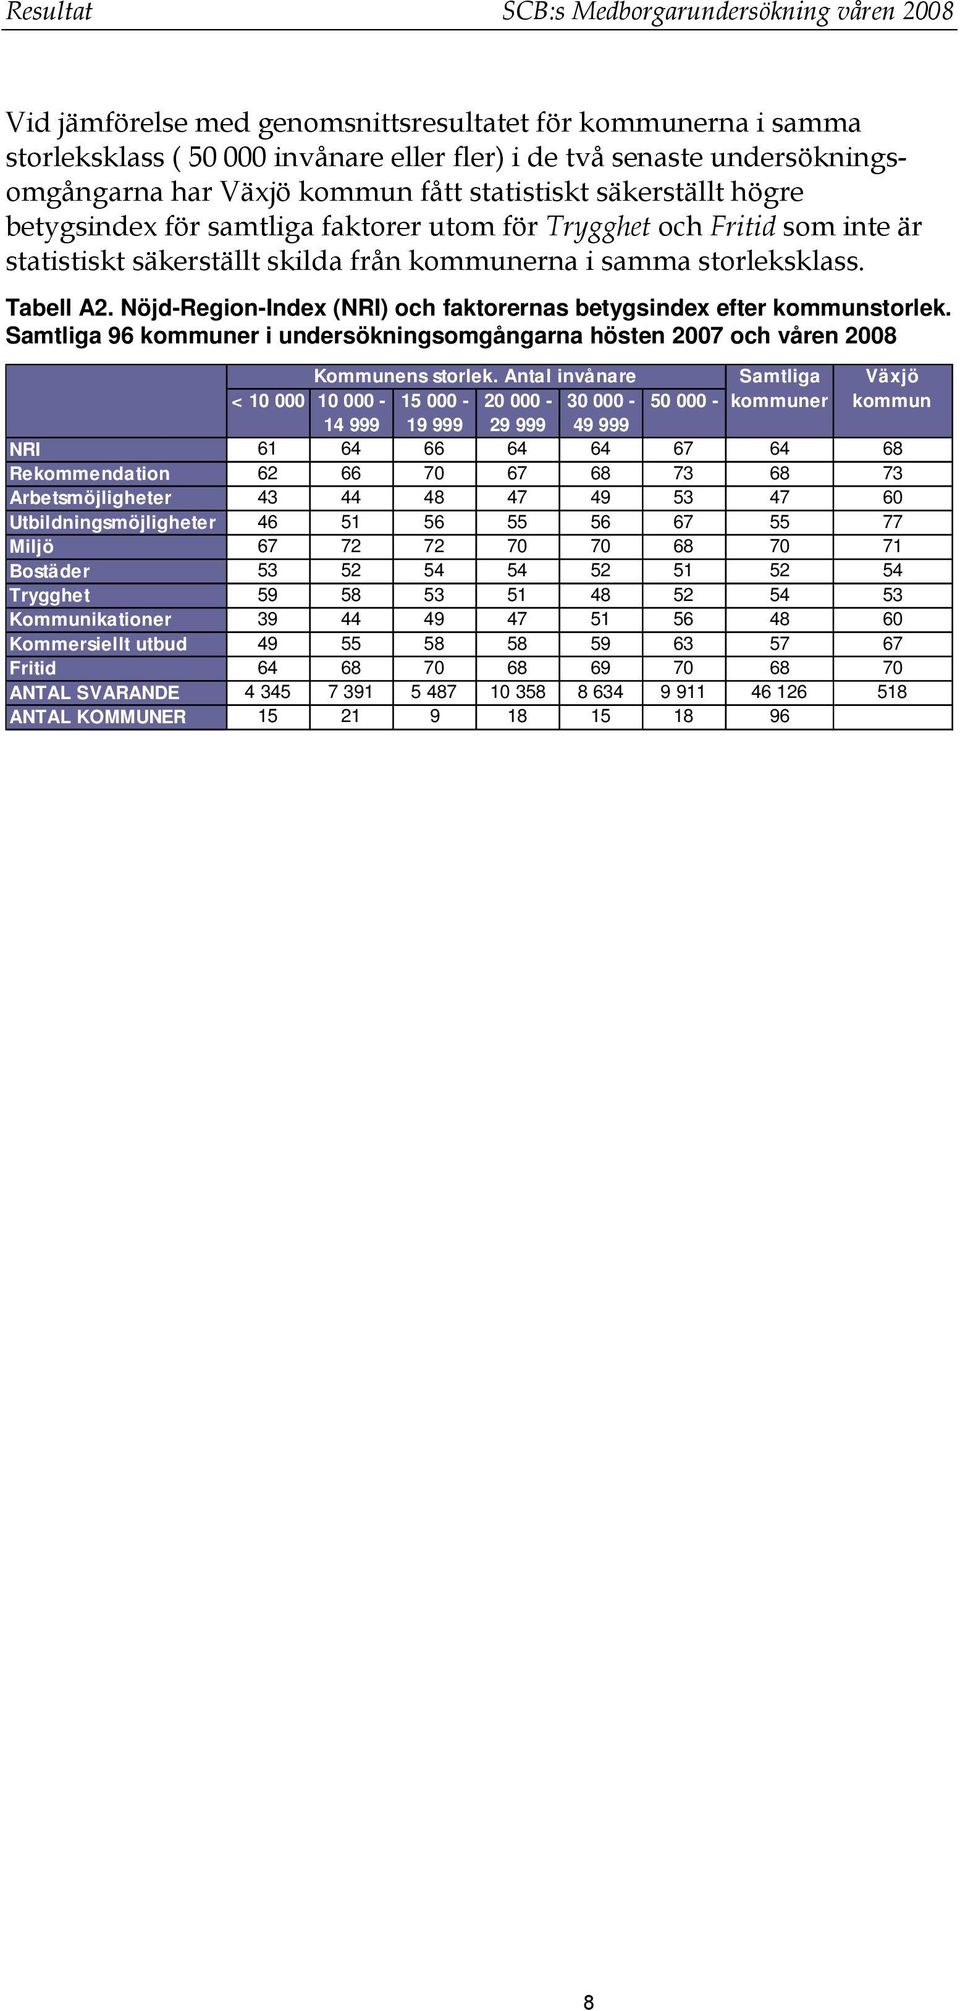 Tabell A2. Nöjd-Region-Index (NRI) och faktorernas betygsindex efter kommunstorlek. Samtliga 96 kommuner i undersökningsomgångarna hösten 2007 och våren 2008 Kommunens storlek.